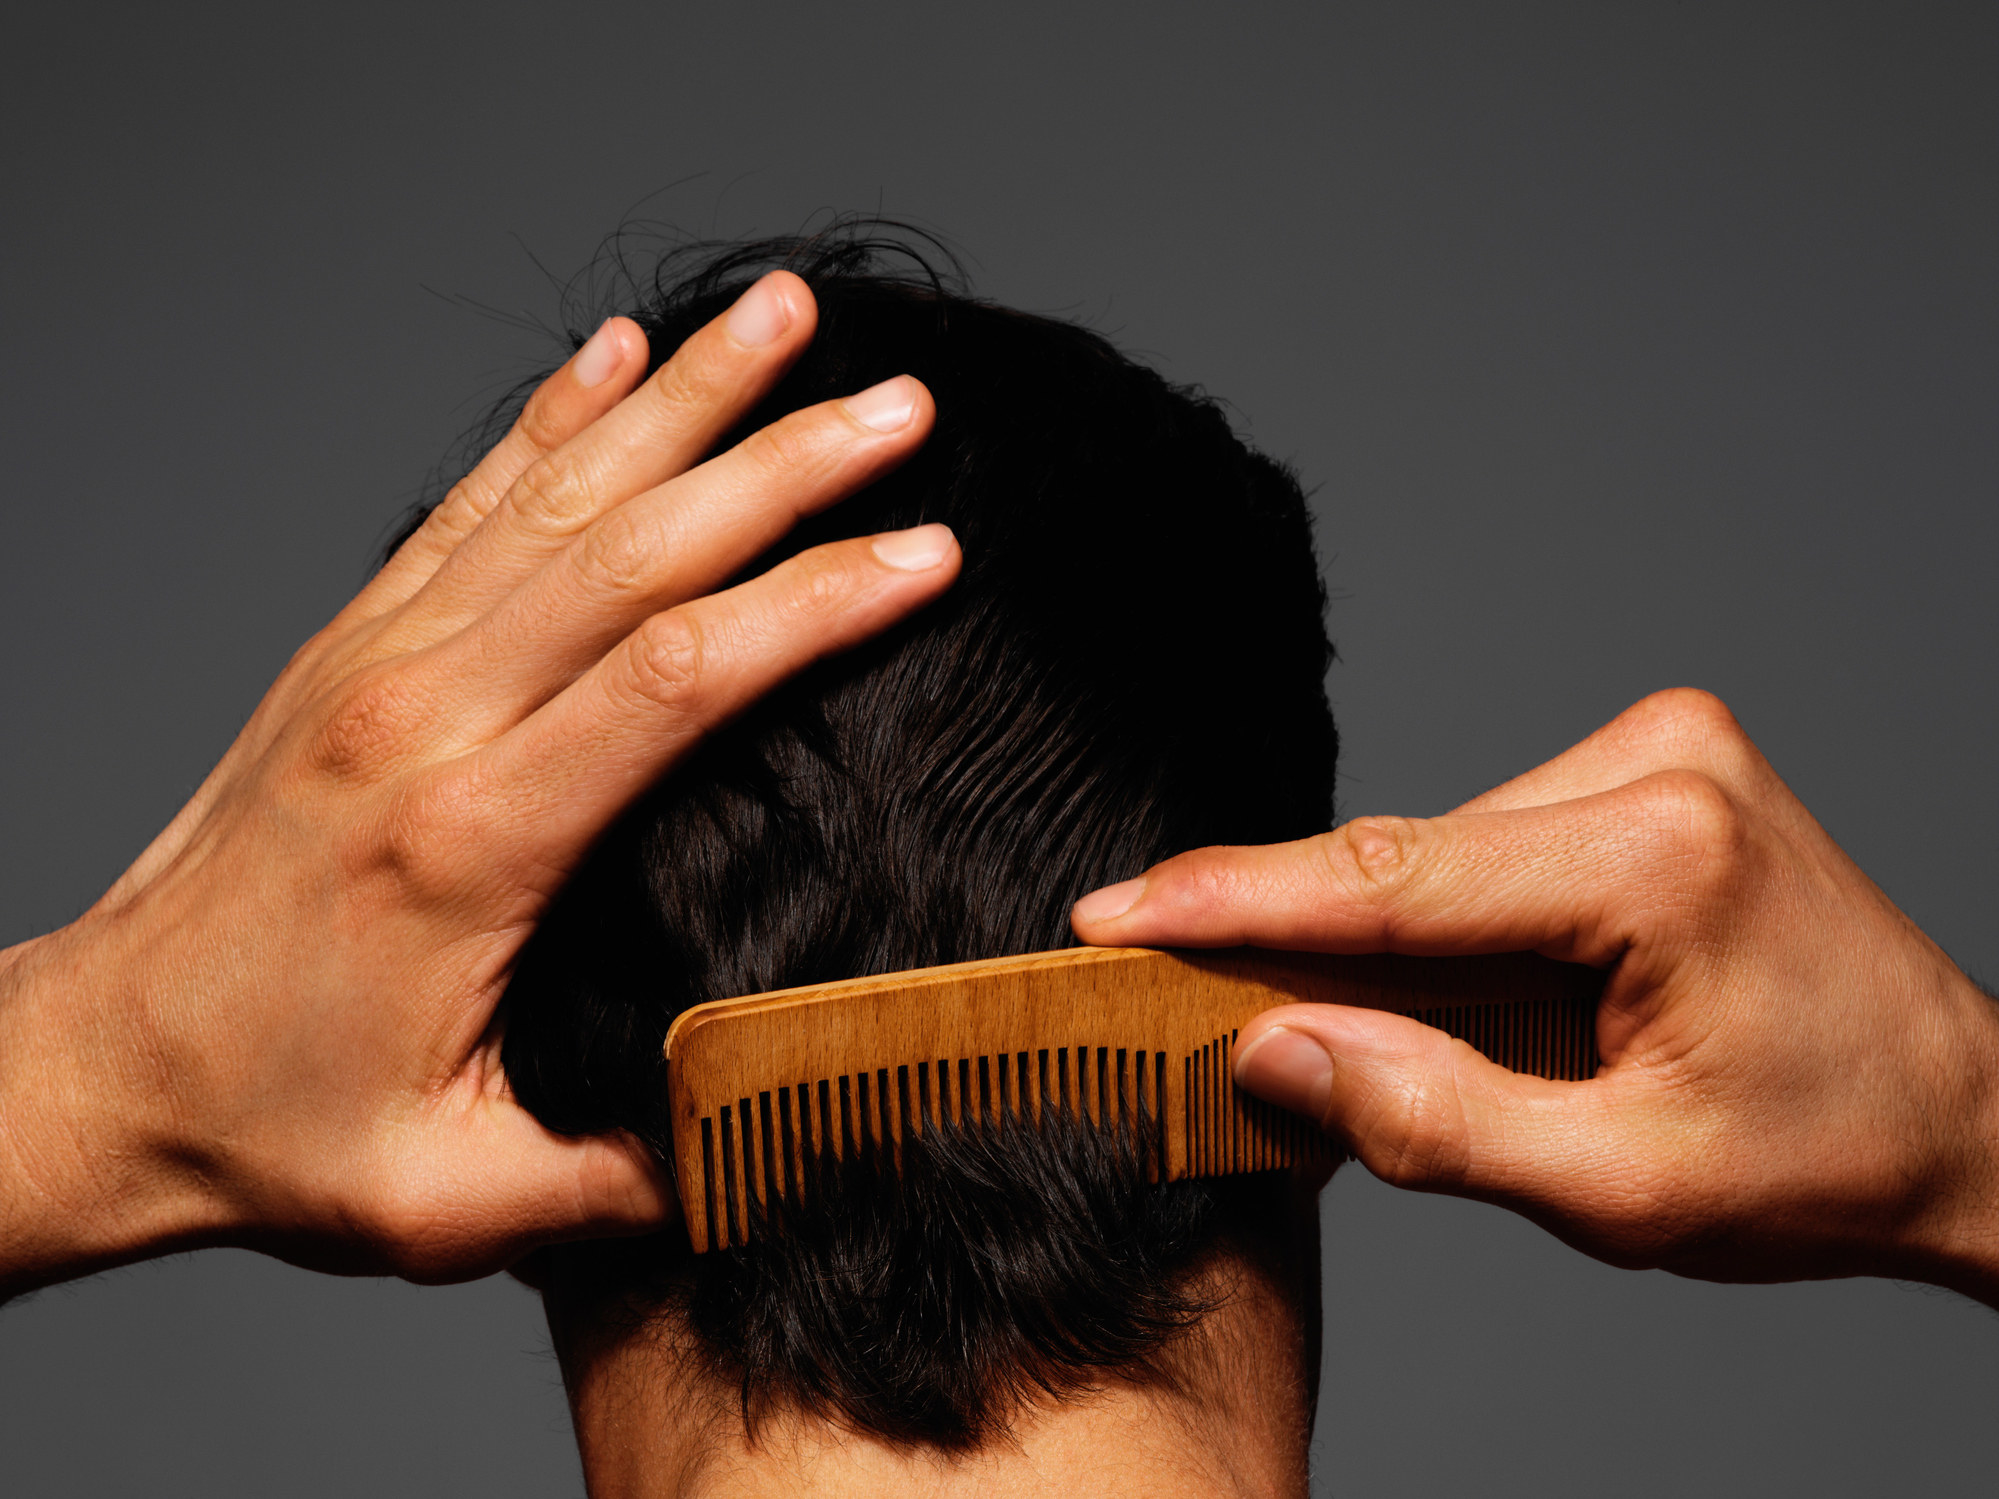 Person with short hair runs a comb through their scalp